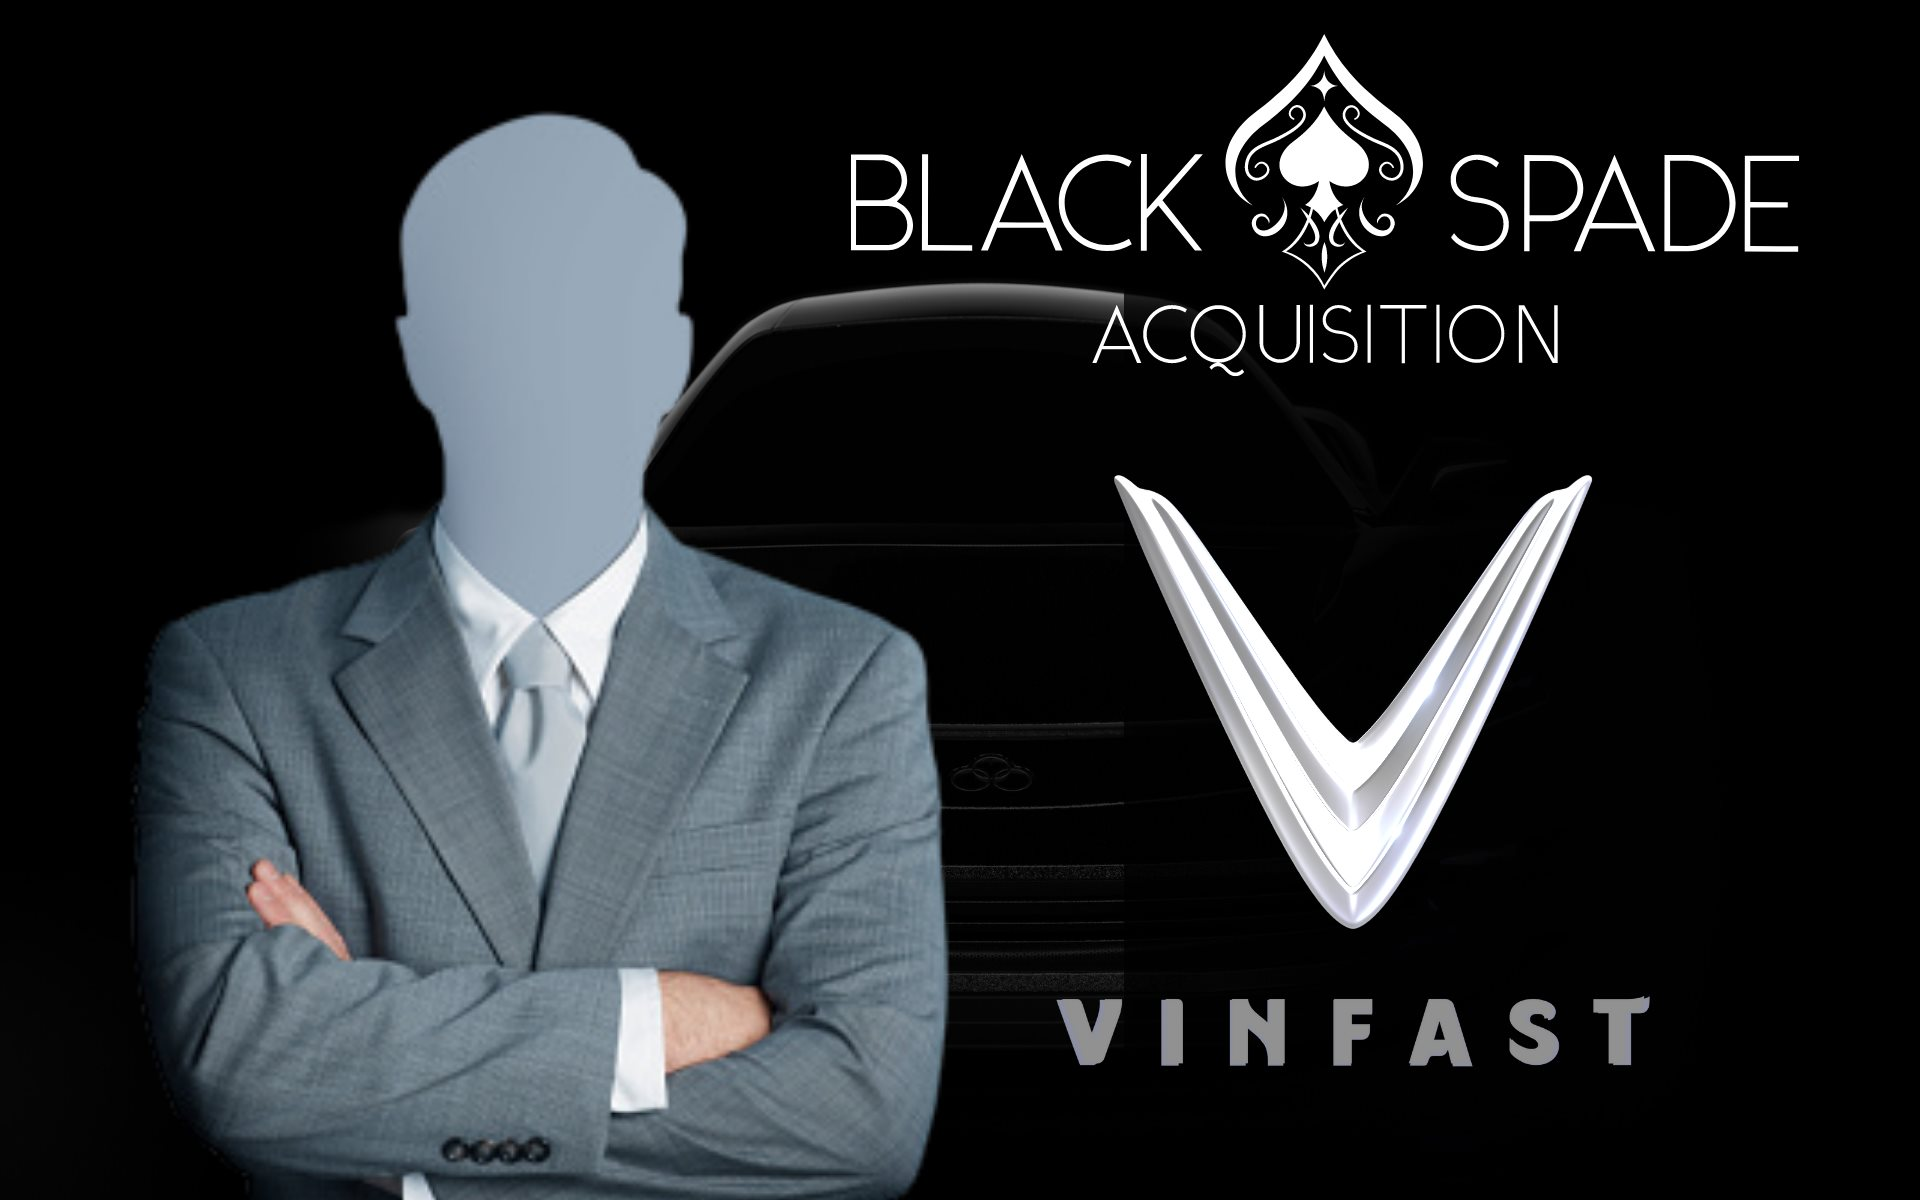 Lai lịch công ty SPAC đưa VinFast niêm yết sàn NYSE: Vốn hóa 220 triệu USD, có 169 triệu USD tiền mặt, do con trai ông vua sòng bài châu Á thành lập - Ảnh 1.